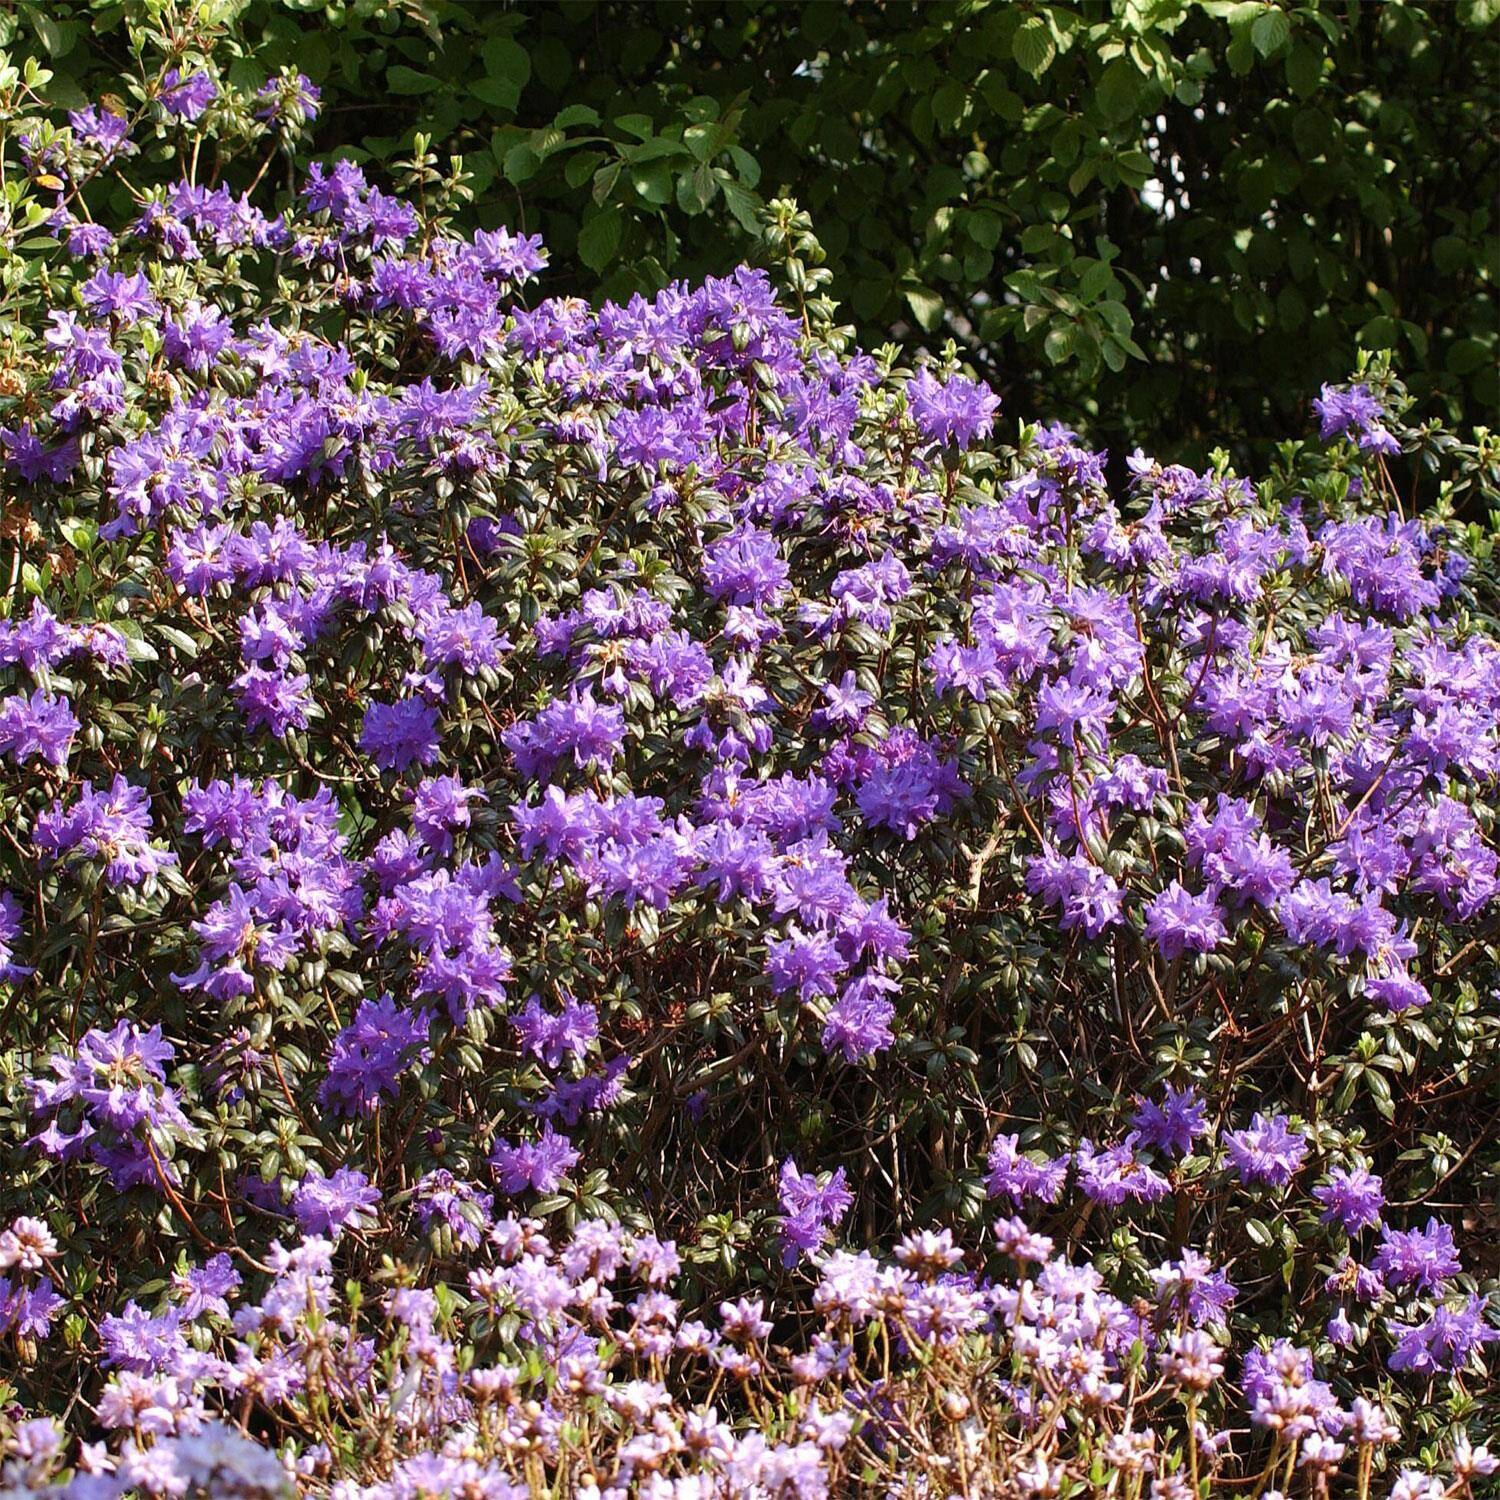 Kategorie <b>Hecken </b> - Rhododendron 'Azurwolke' - Rhododendron russatum 'Azurwolke'